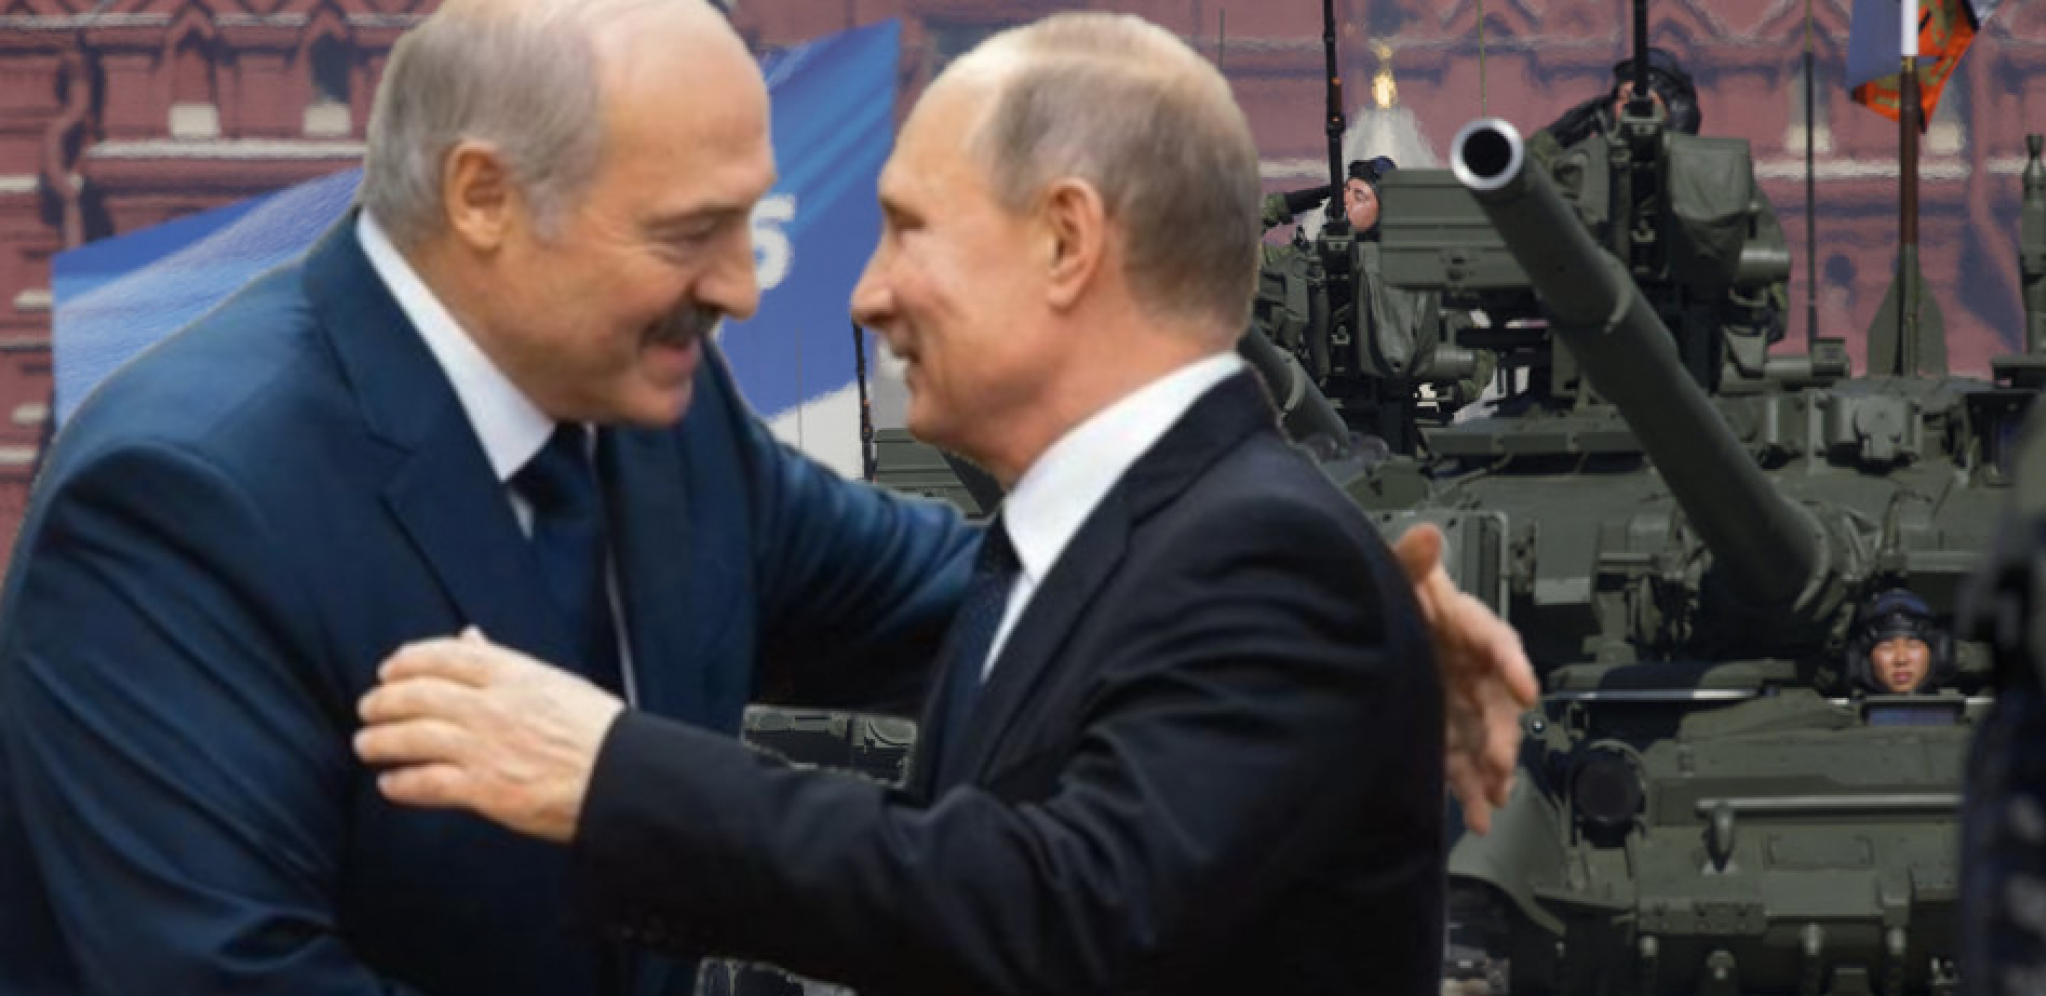 OVE REČI SE NE SMEJU IGNORISATI Lukašenko javno upozorava planetu